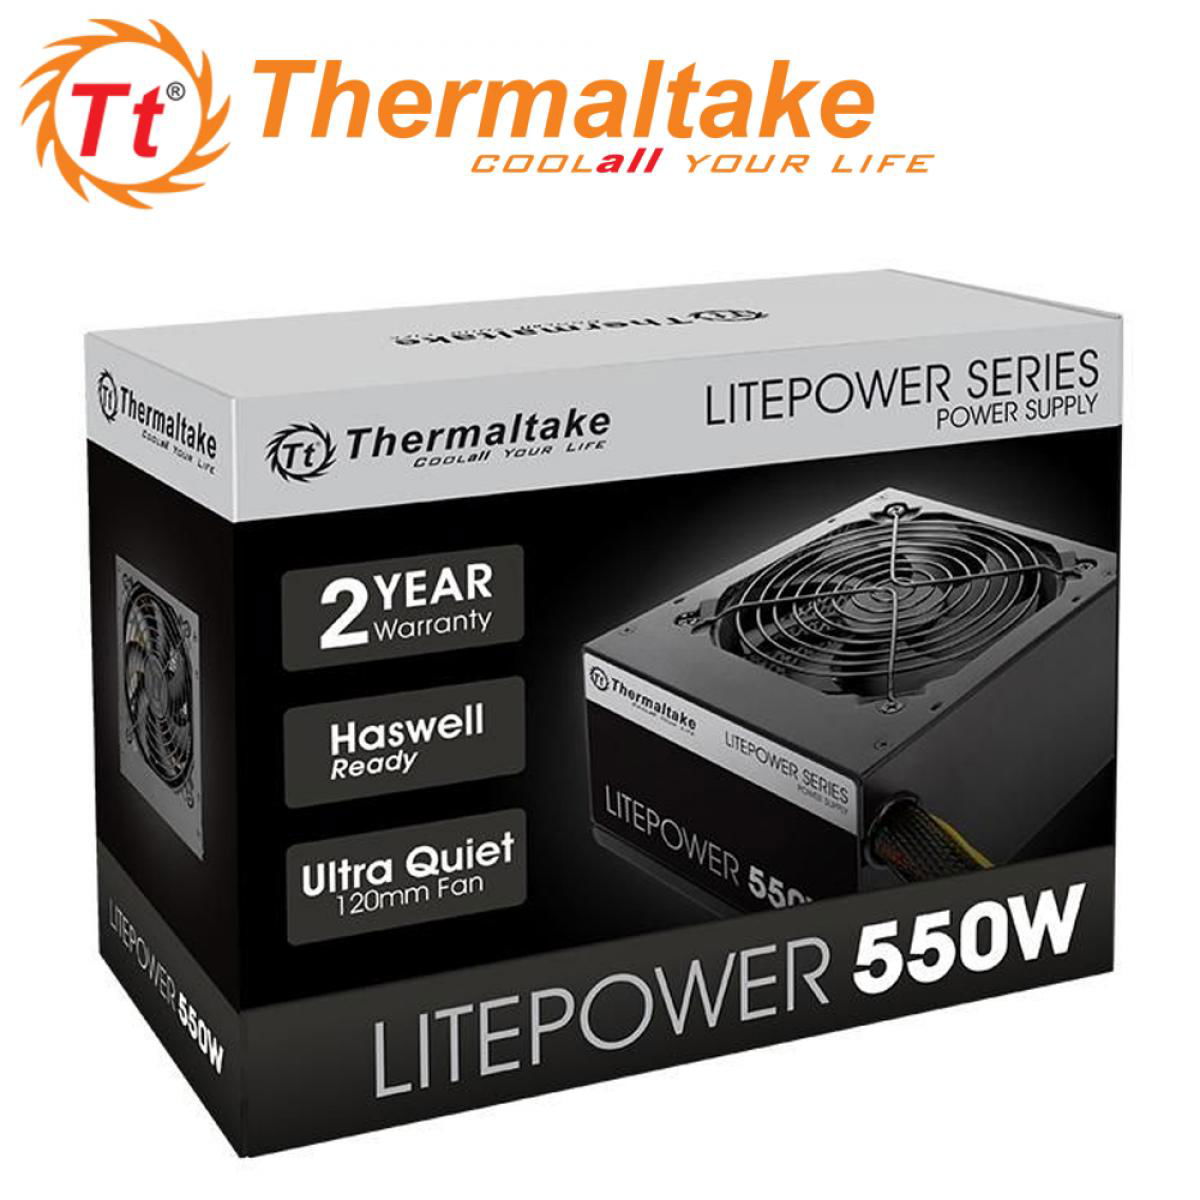 Thermaltake Litepower Gen2 550W ATX Black